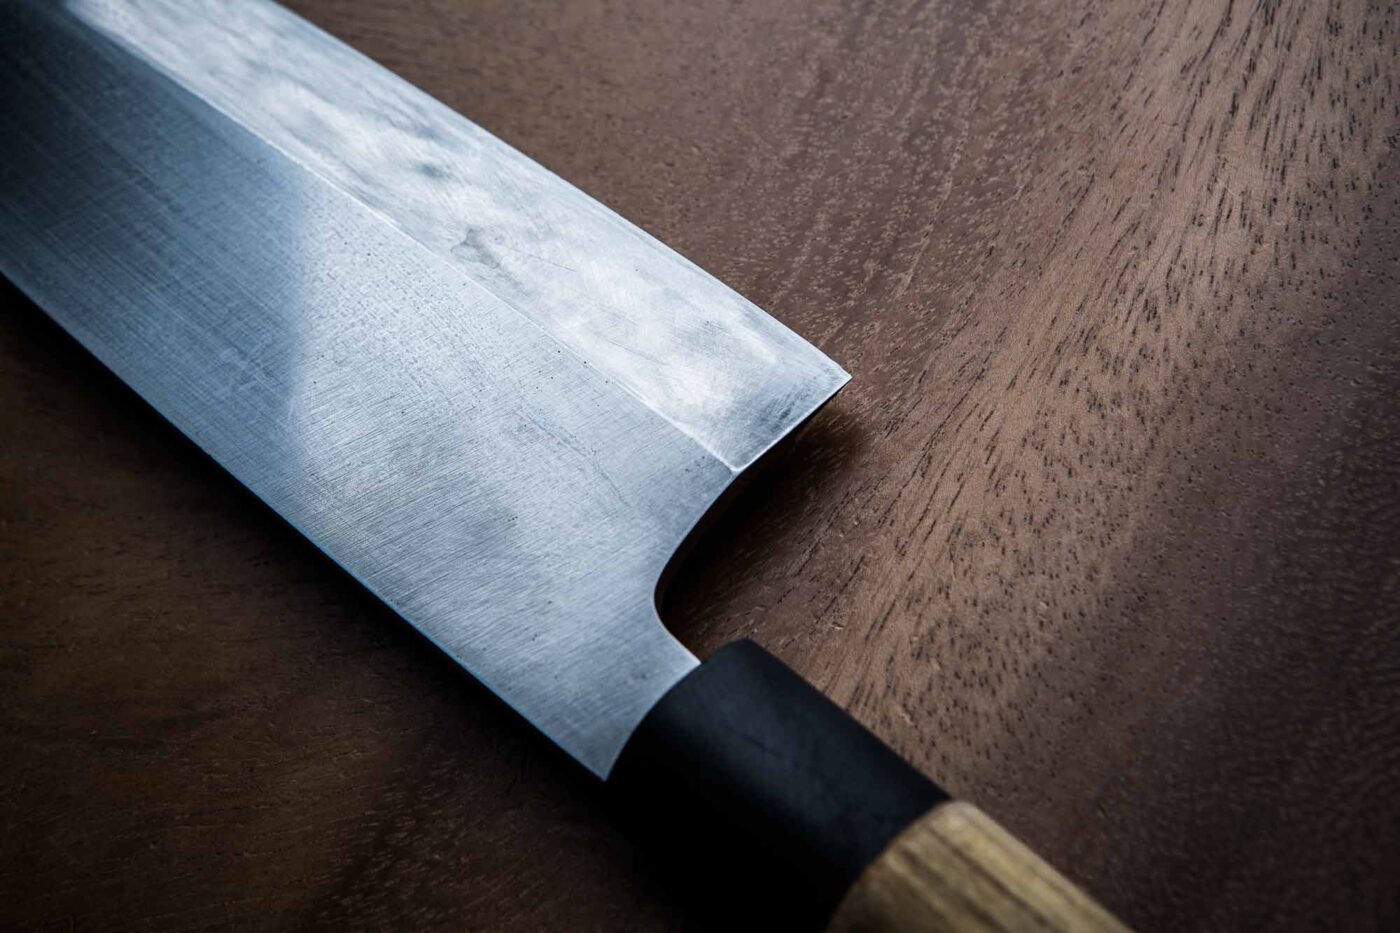 Los mejores cuchillos japoneses para el atún rojo - Fuentes